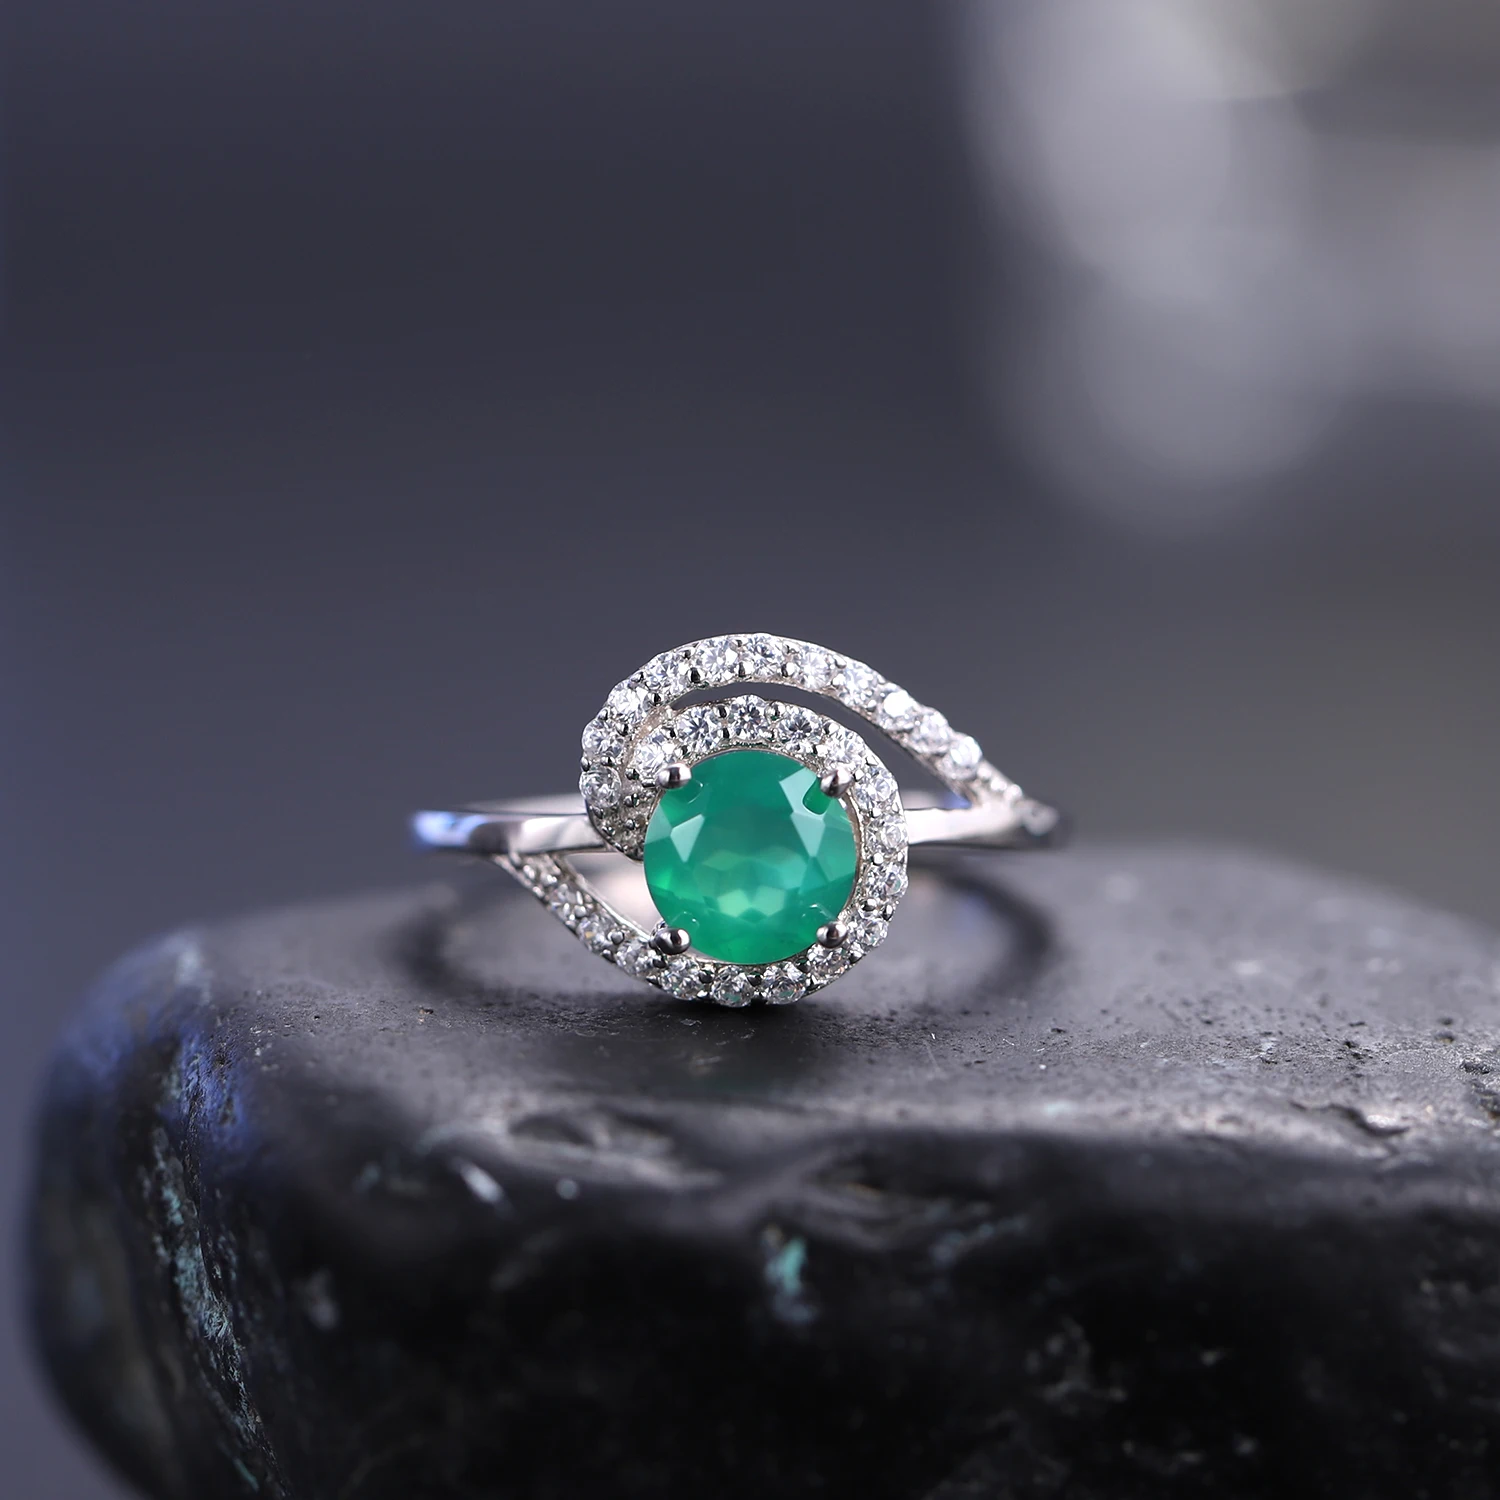 GEM'S BALLET Обручальное кольцо с натуральным зеленым агатом и драгоценным камнем 6 мм из стерлингового серебра 925 пробы, кольцо с ониксом, Женское винтажное кольцо, подарок для нее